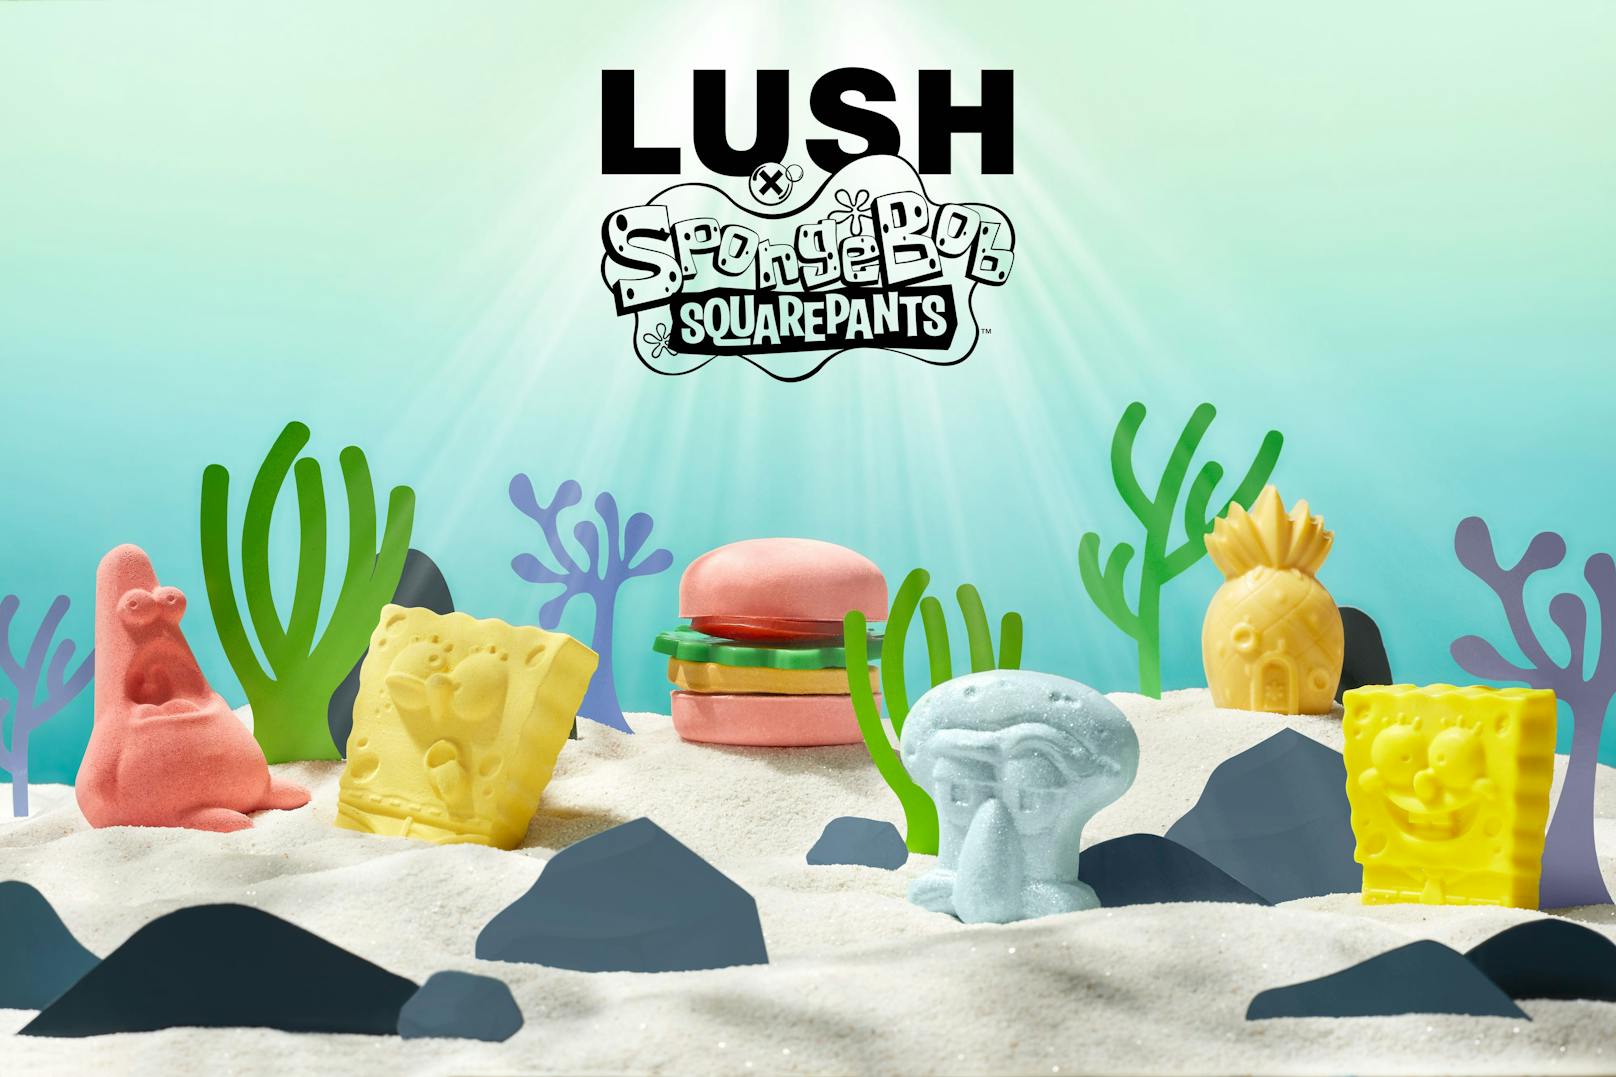 Schönheitsprodukte-Hersteller Lush erweitert sein Sortiment mit neuen SpongeBob-Artikeln.